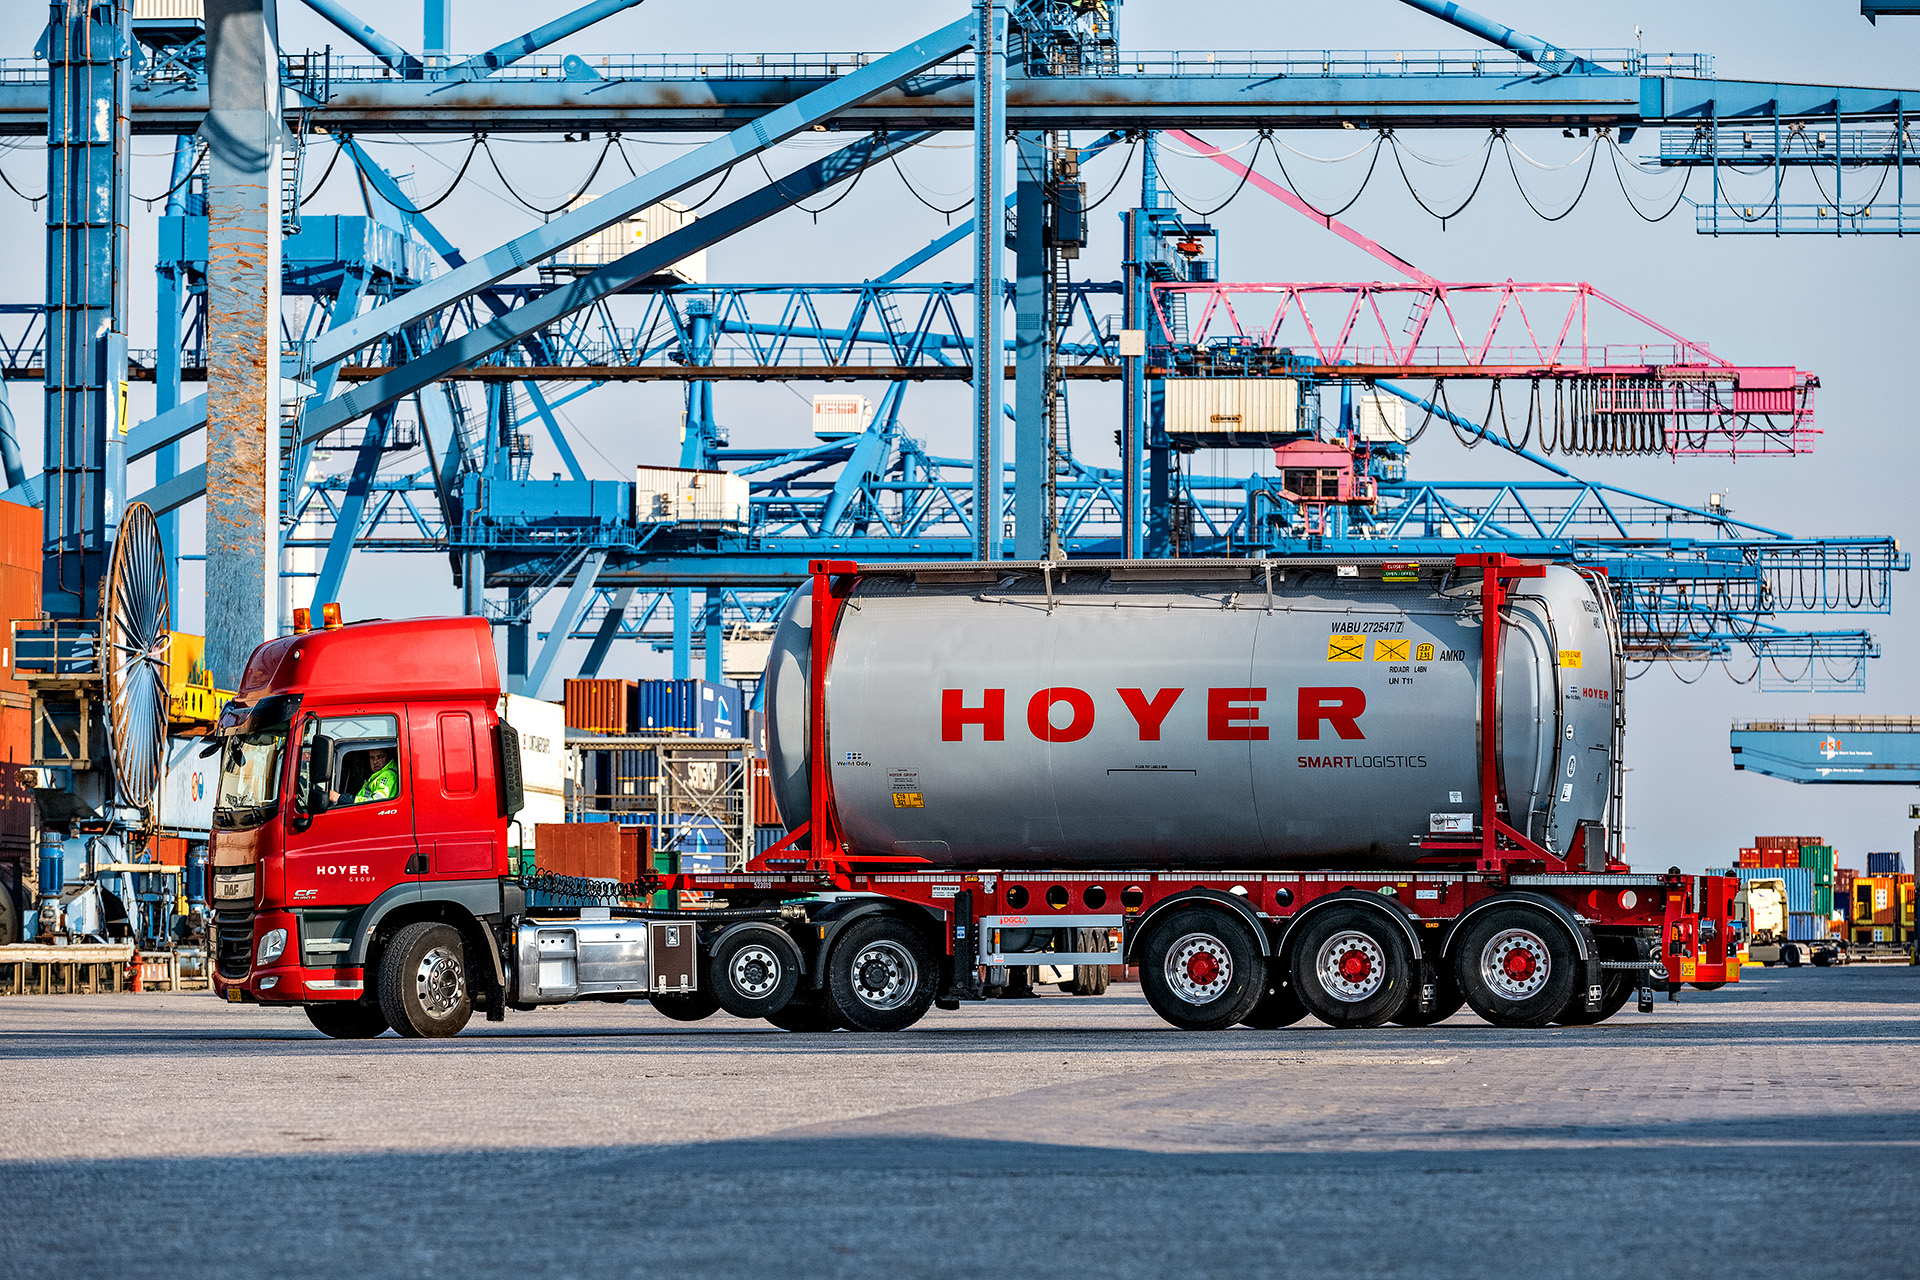 HOYER Lkw mit Chemie-Tankcontainer smart logistics in Rotterdam